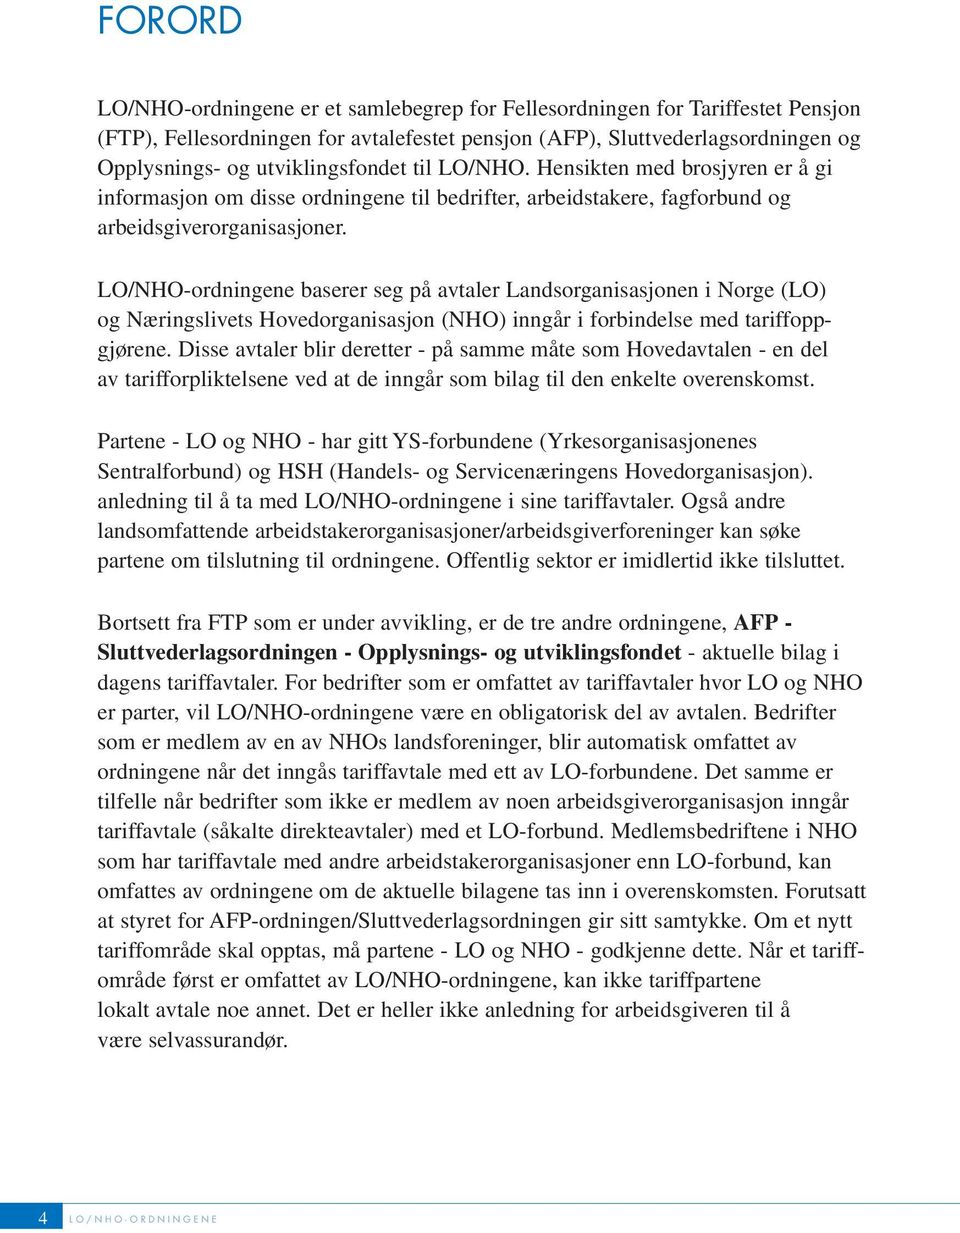 LO/NHO-ordningene baserer seg på avtaler Landsorganisasjonen i Norge (LO) og Næringslivets Hovedorganisasjon (NHO) inngår i forbindelse med tariffoppgjørene.